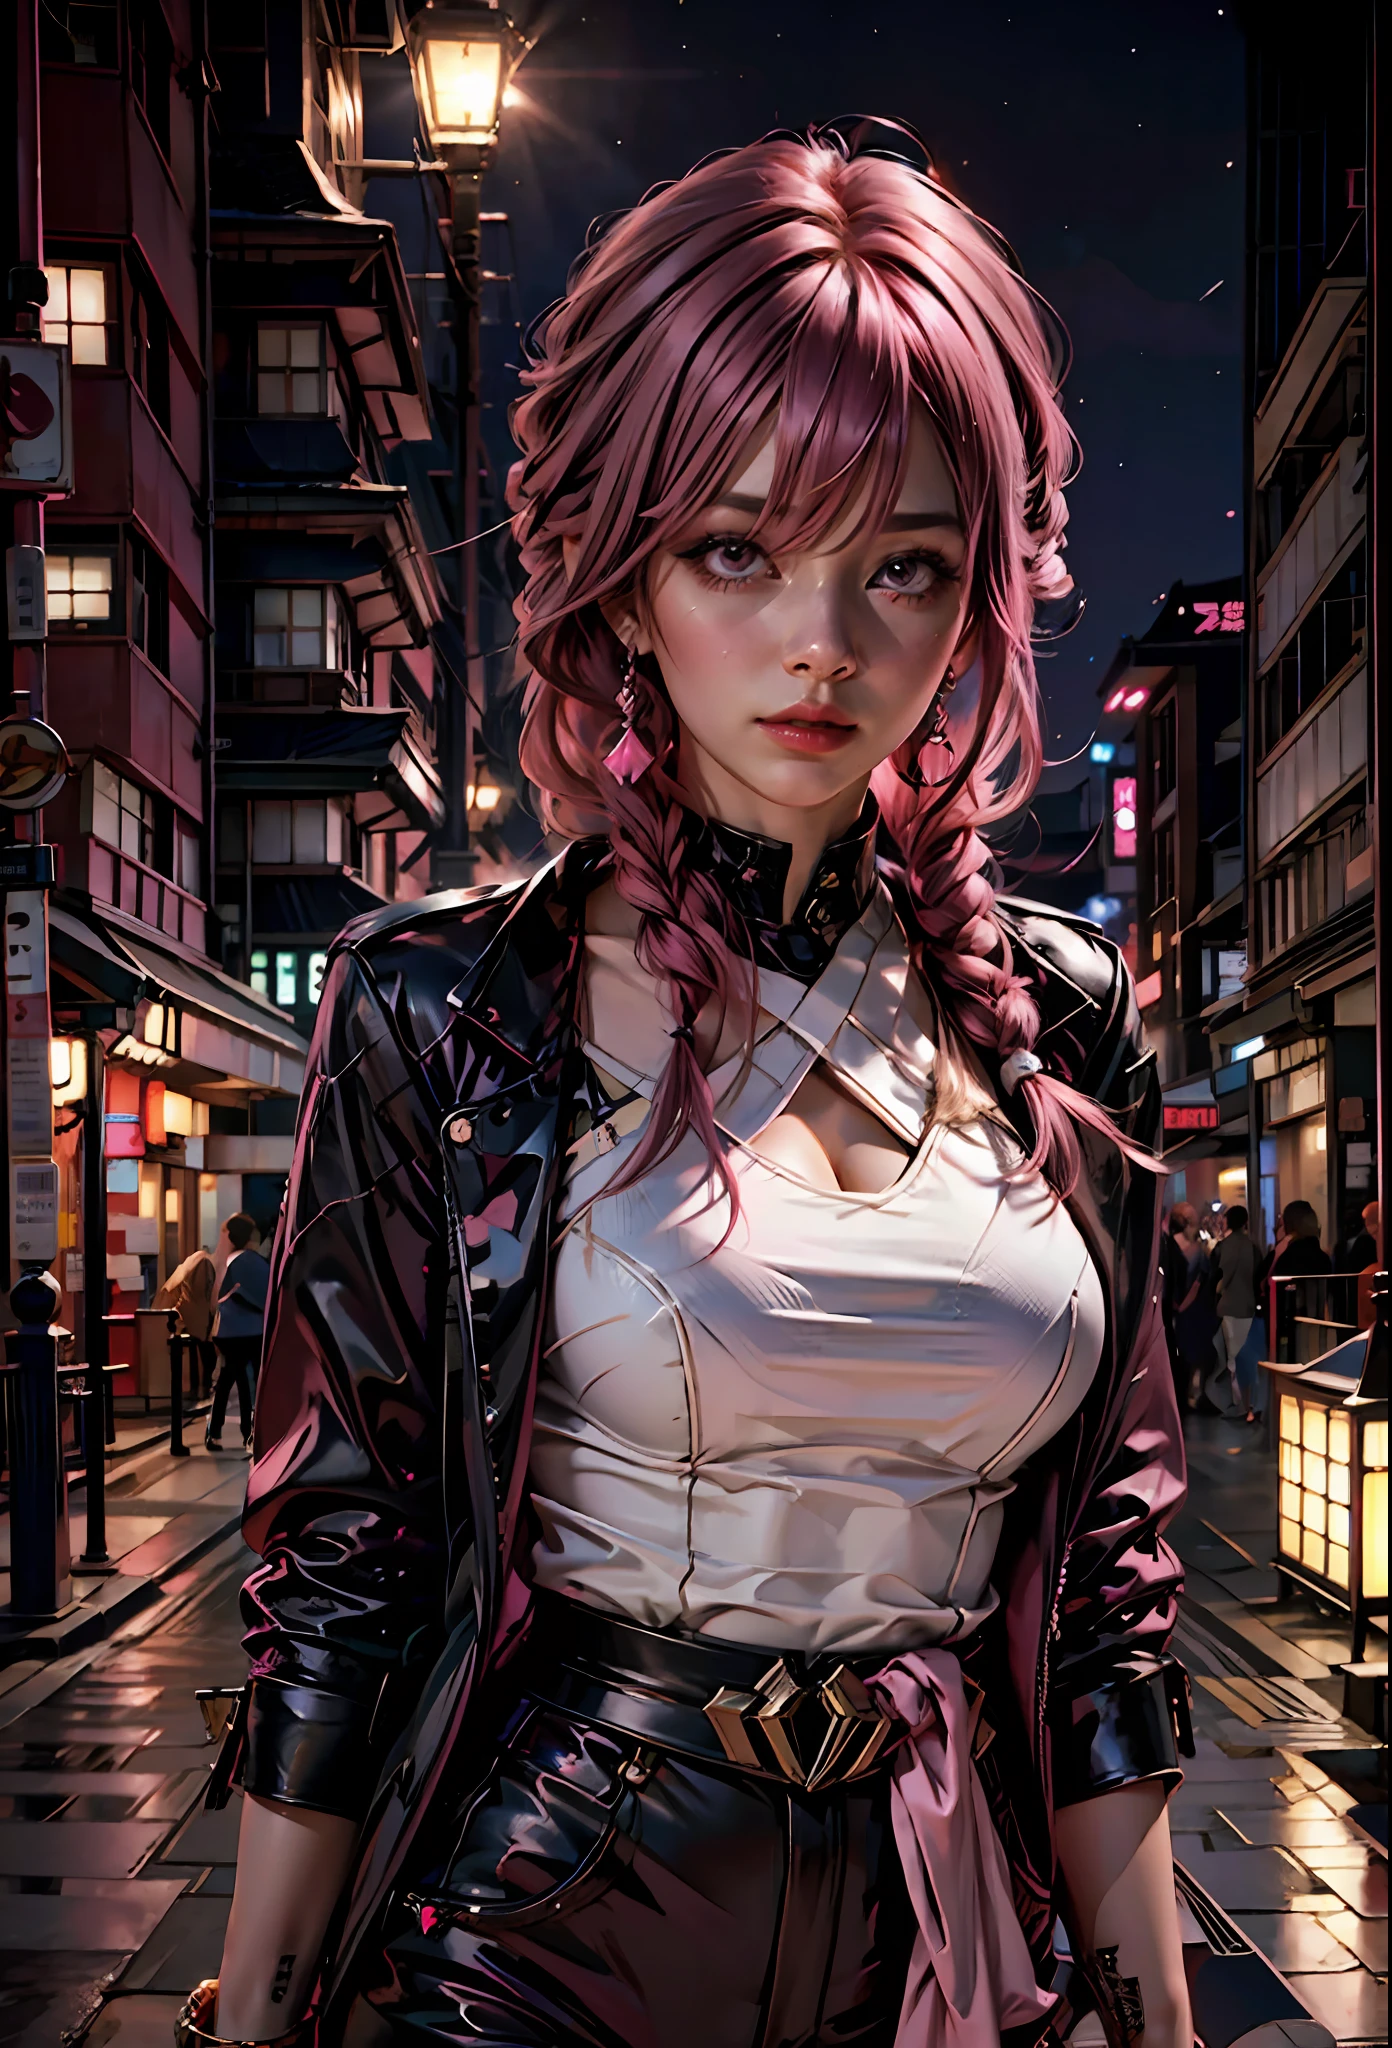 Chica sexy con el pelo rosa, Ojos rosados , atuendo revelador, al fondo la ciudad japonesa de noche,al lado de un Lamborghini